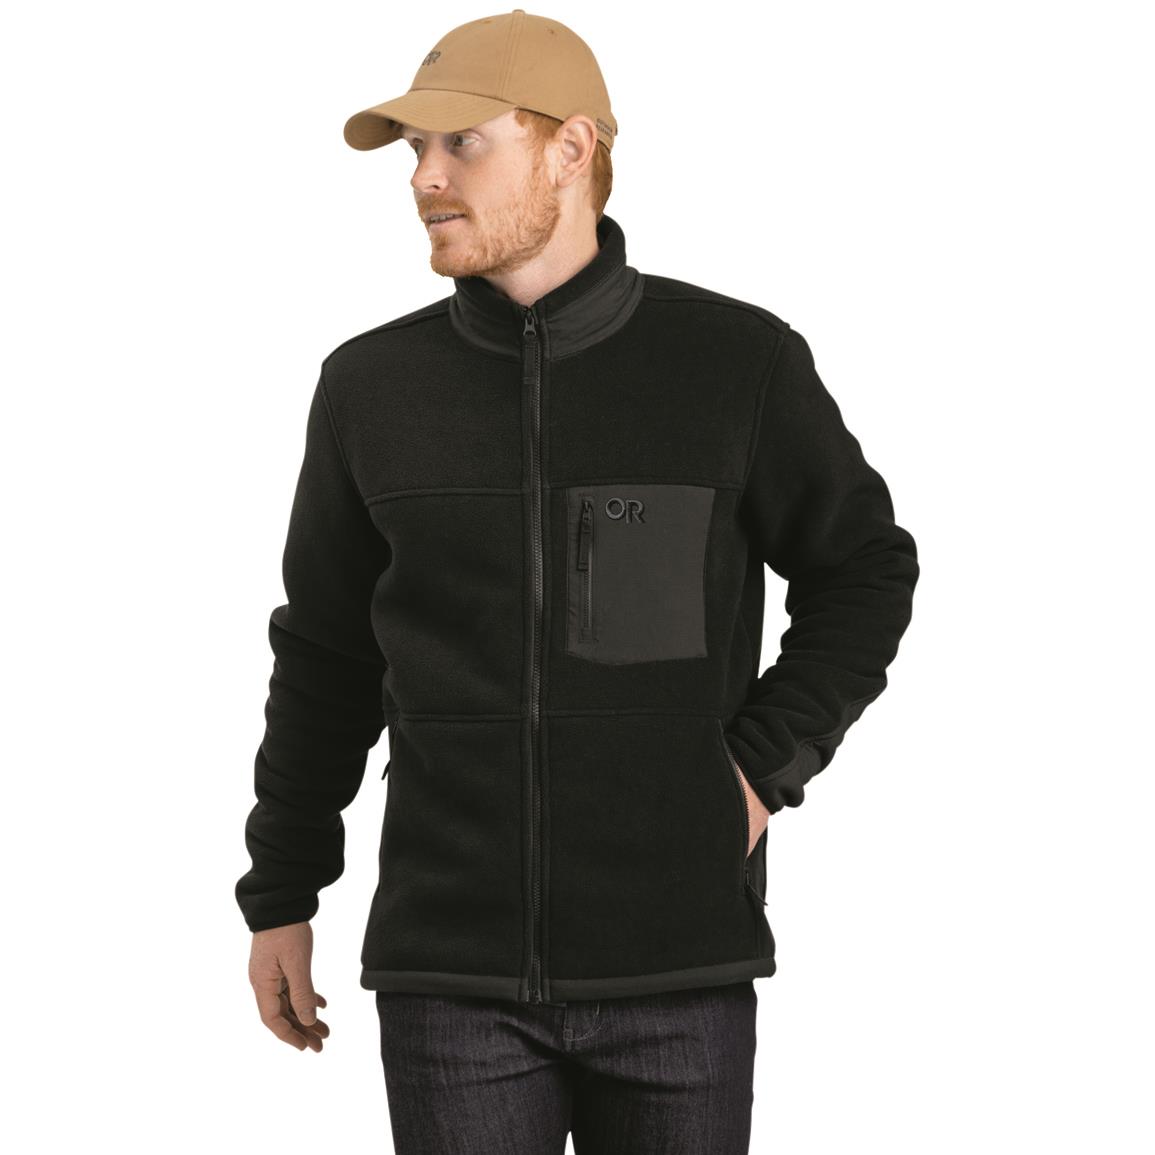 Outdoor Research Men's Juneau Fleece Jacket, Black